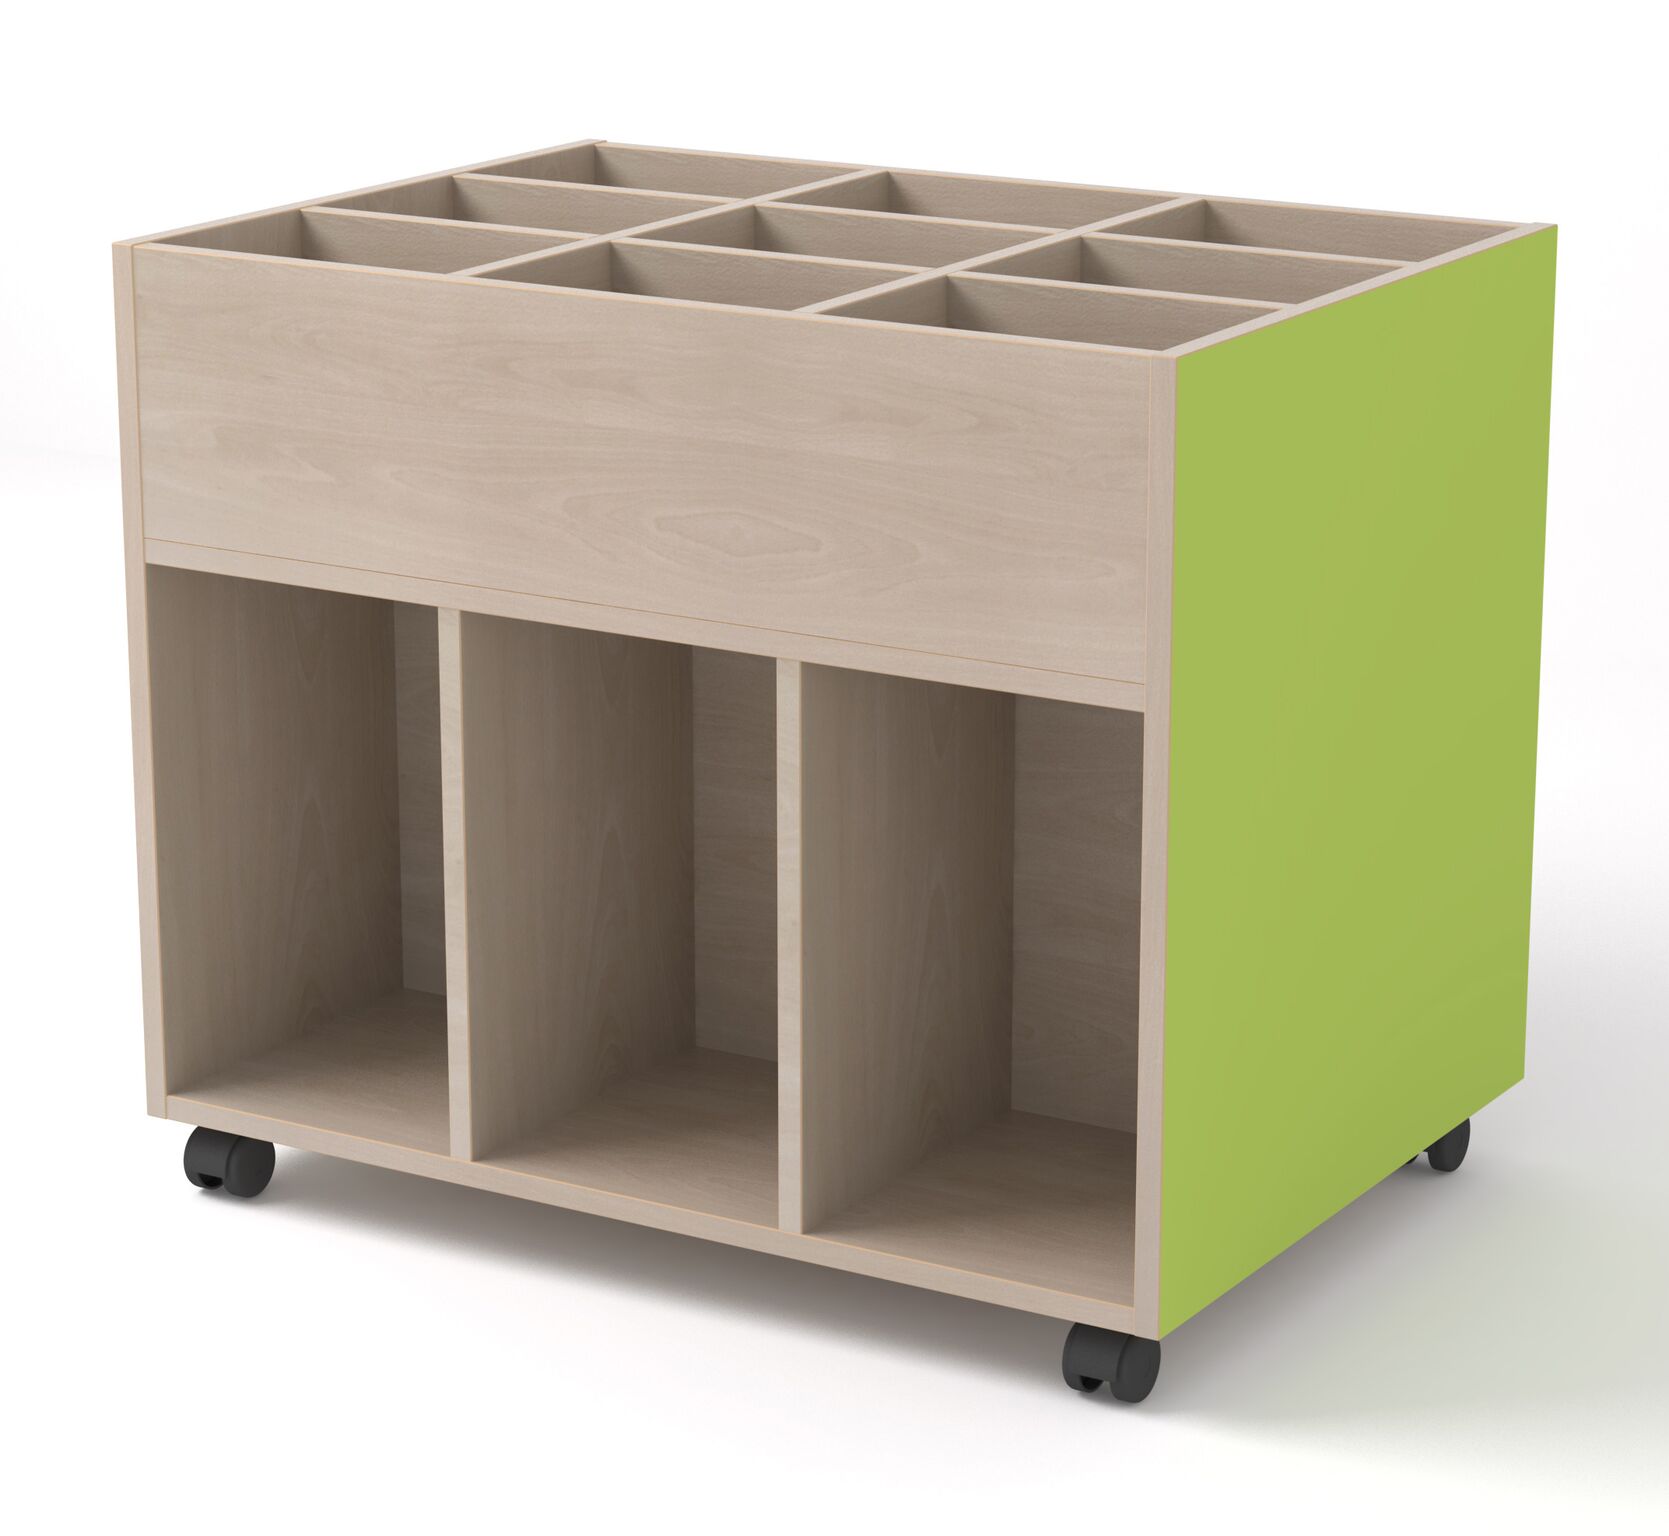 Mobiliario escolar · Expertos en diseño de oficinas